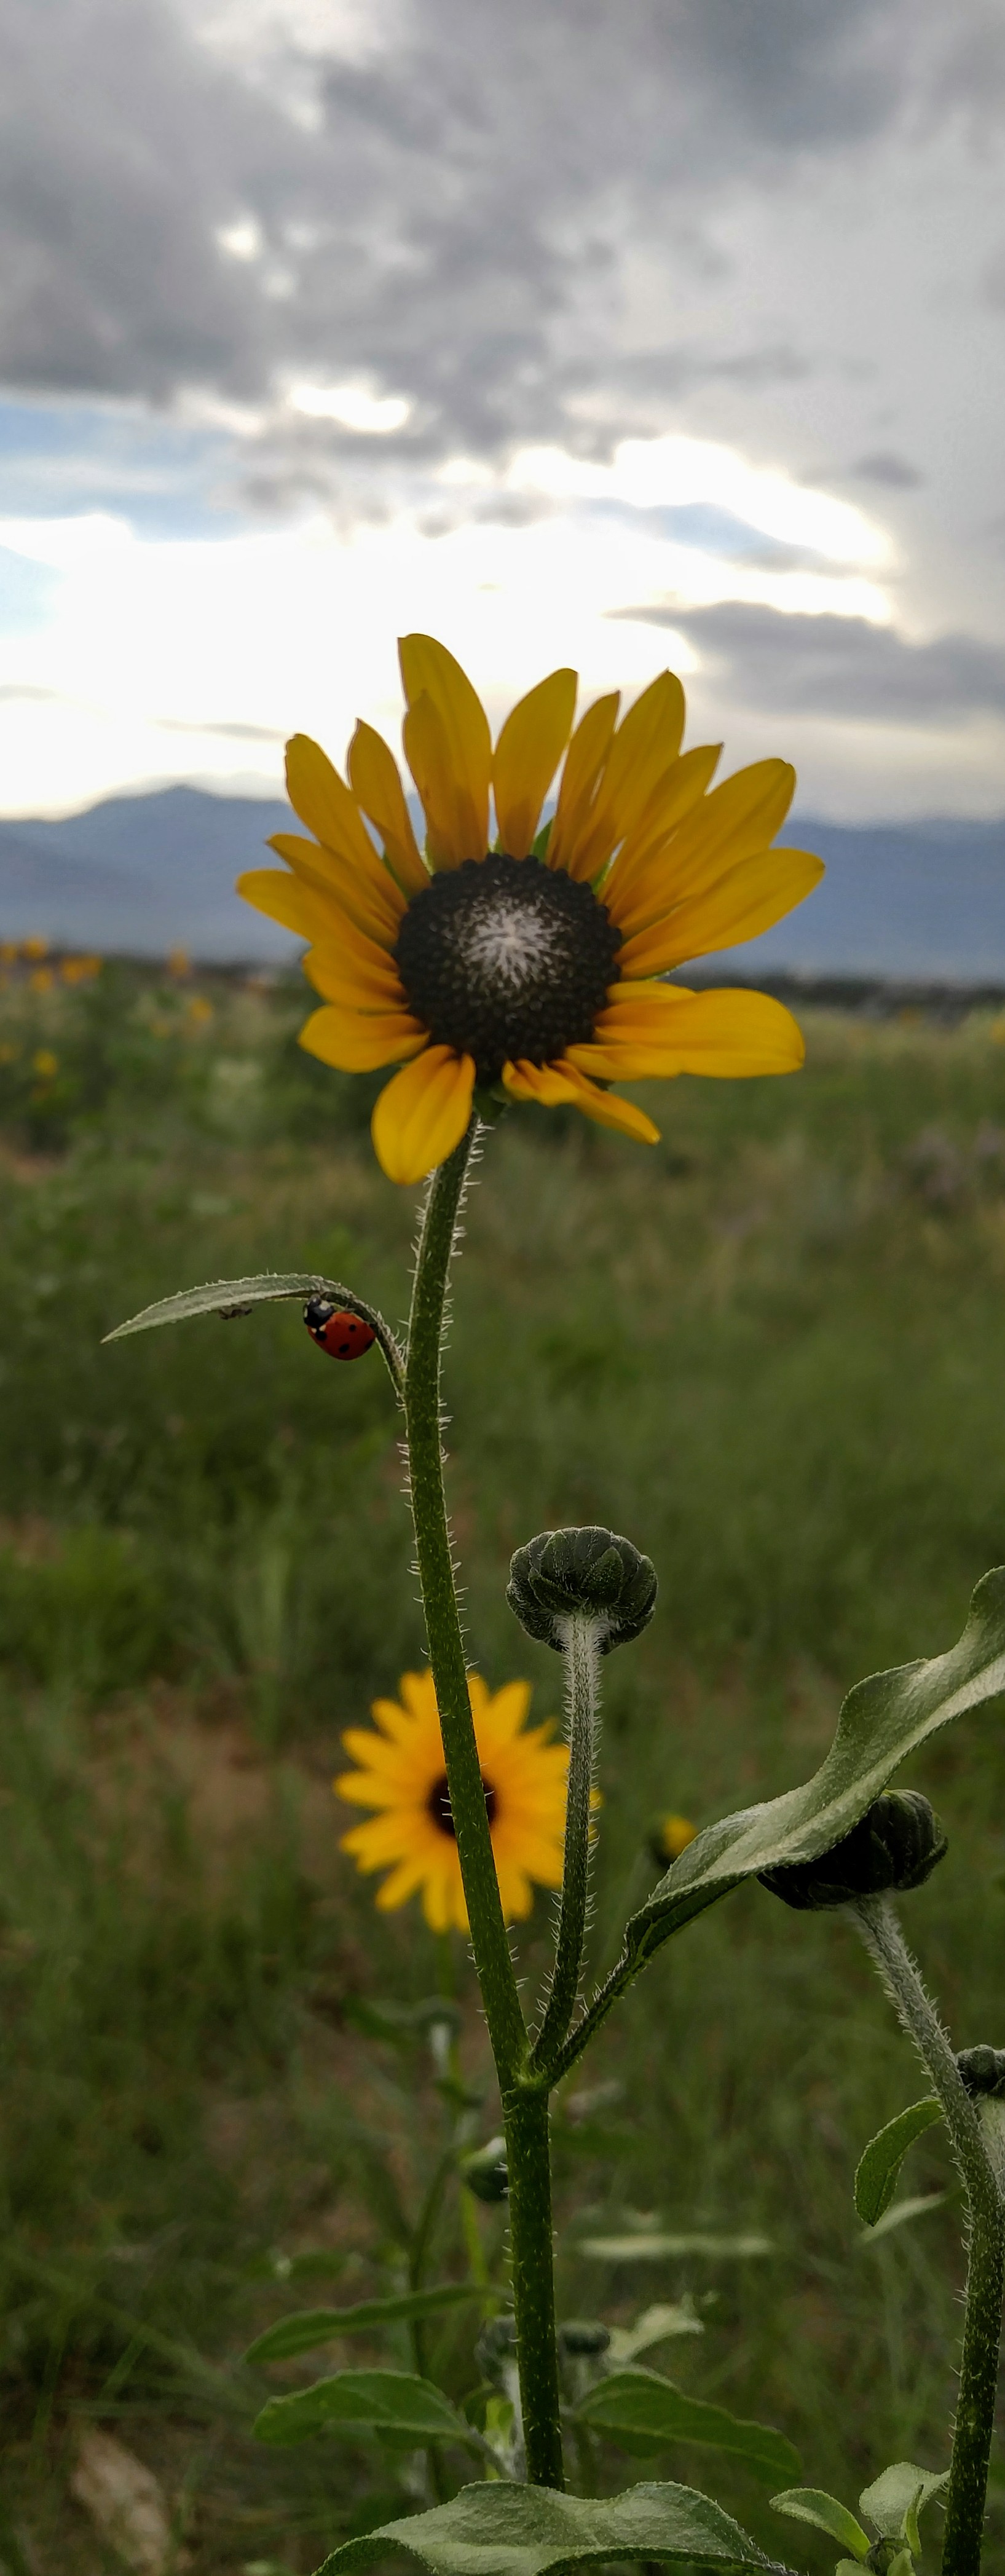 Ladybug Sunflower, Colorado Springs